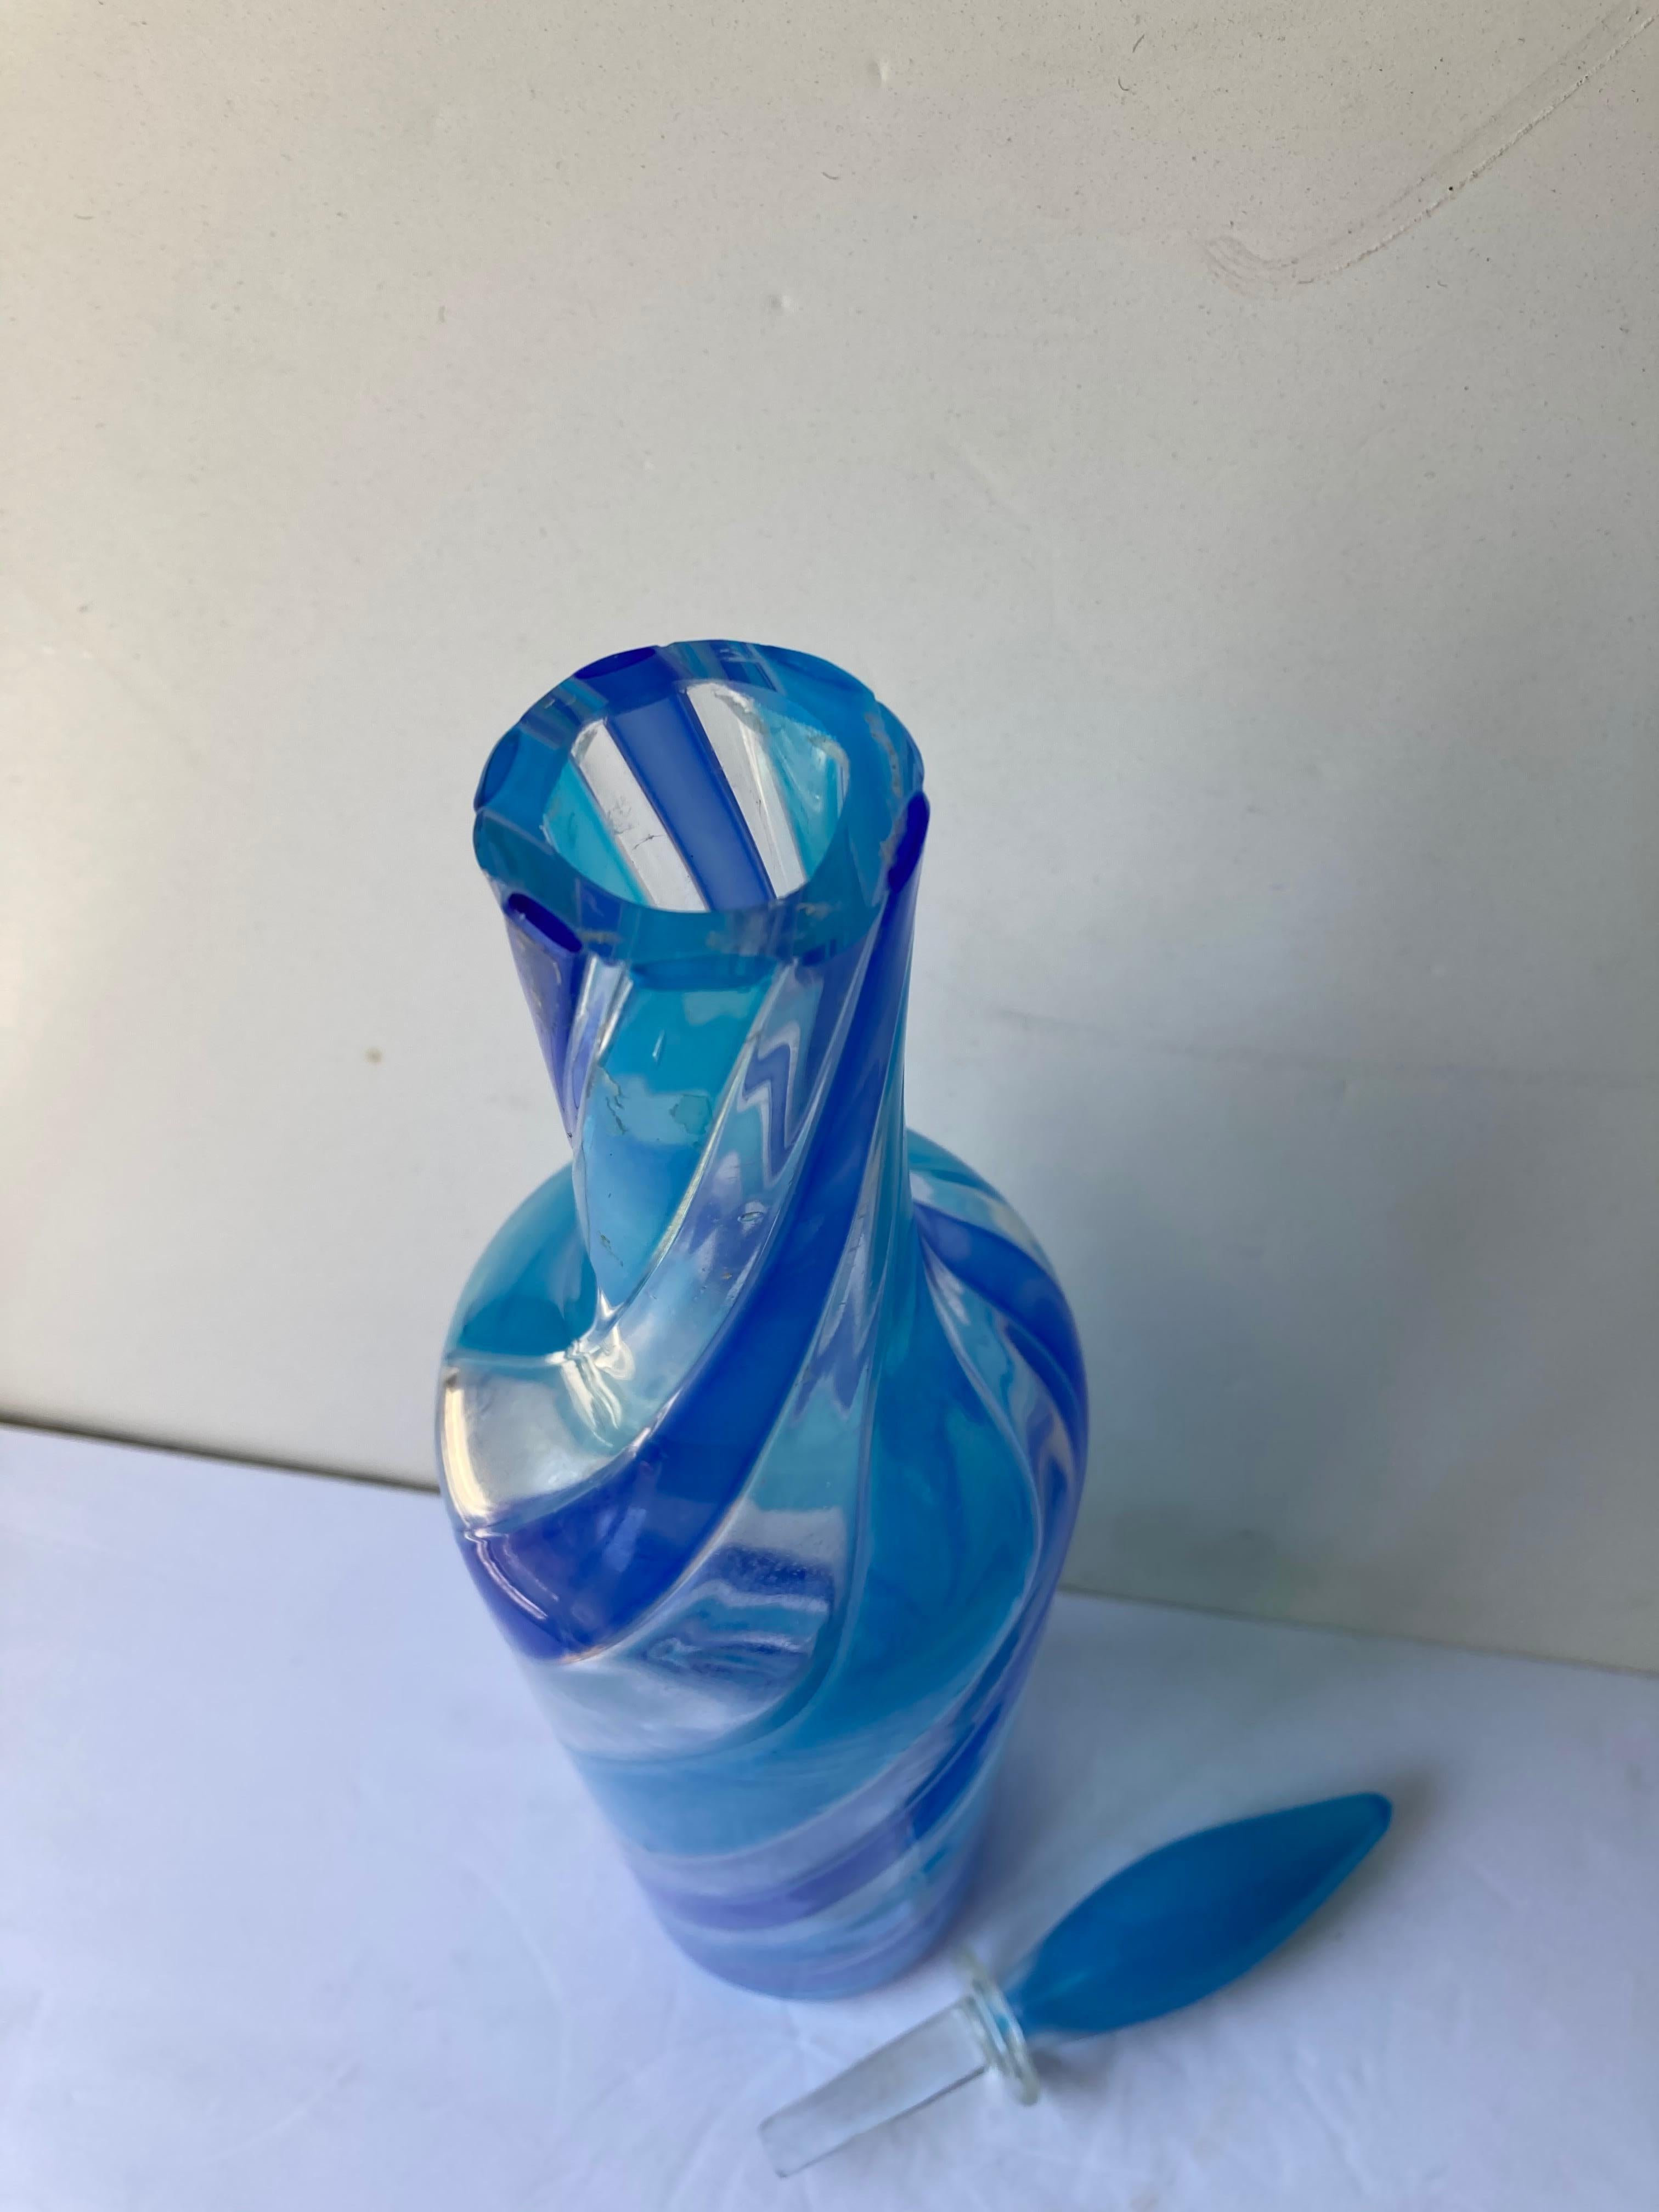 Il s'agit d'une bouteille extraordinaire, très haute, fabriquée par le célèbre fabricant Fratelli Toso et soufflée à la main en verre de Murano. Possède une étiquette bleue partielle pour Toso Brothers dans les années 50/60.